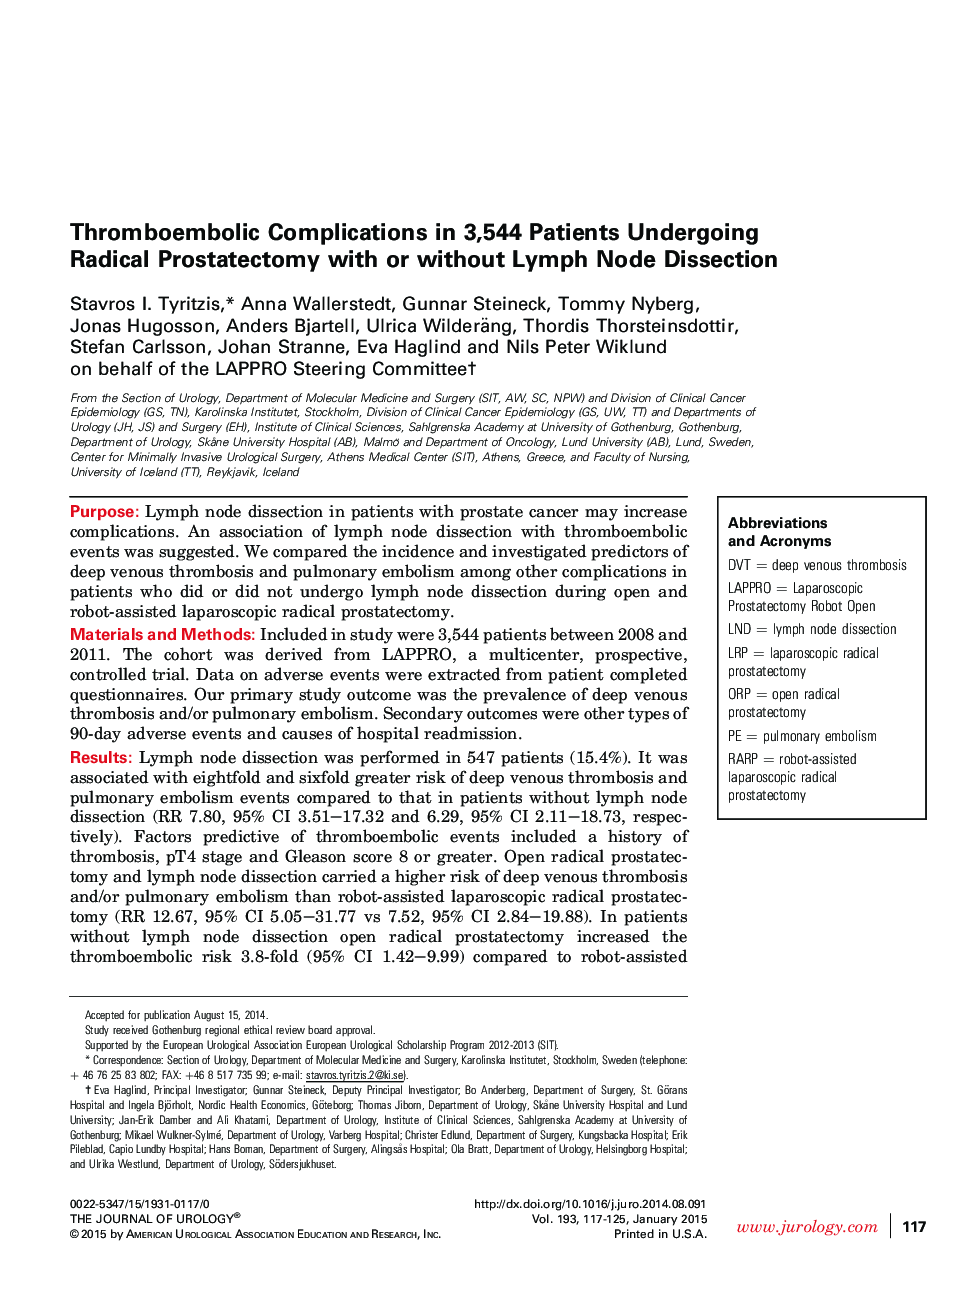 عوارض ترومبو آمبولی در 3544 بیمار مبتلا به پروستاتکتومی رادیکال با یا بدون توموگرافی لنفاوی 